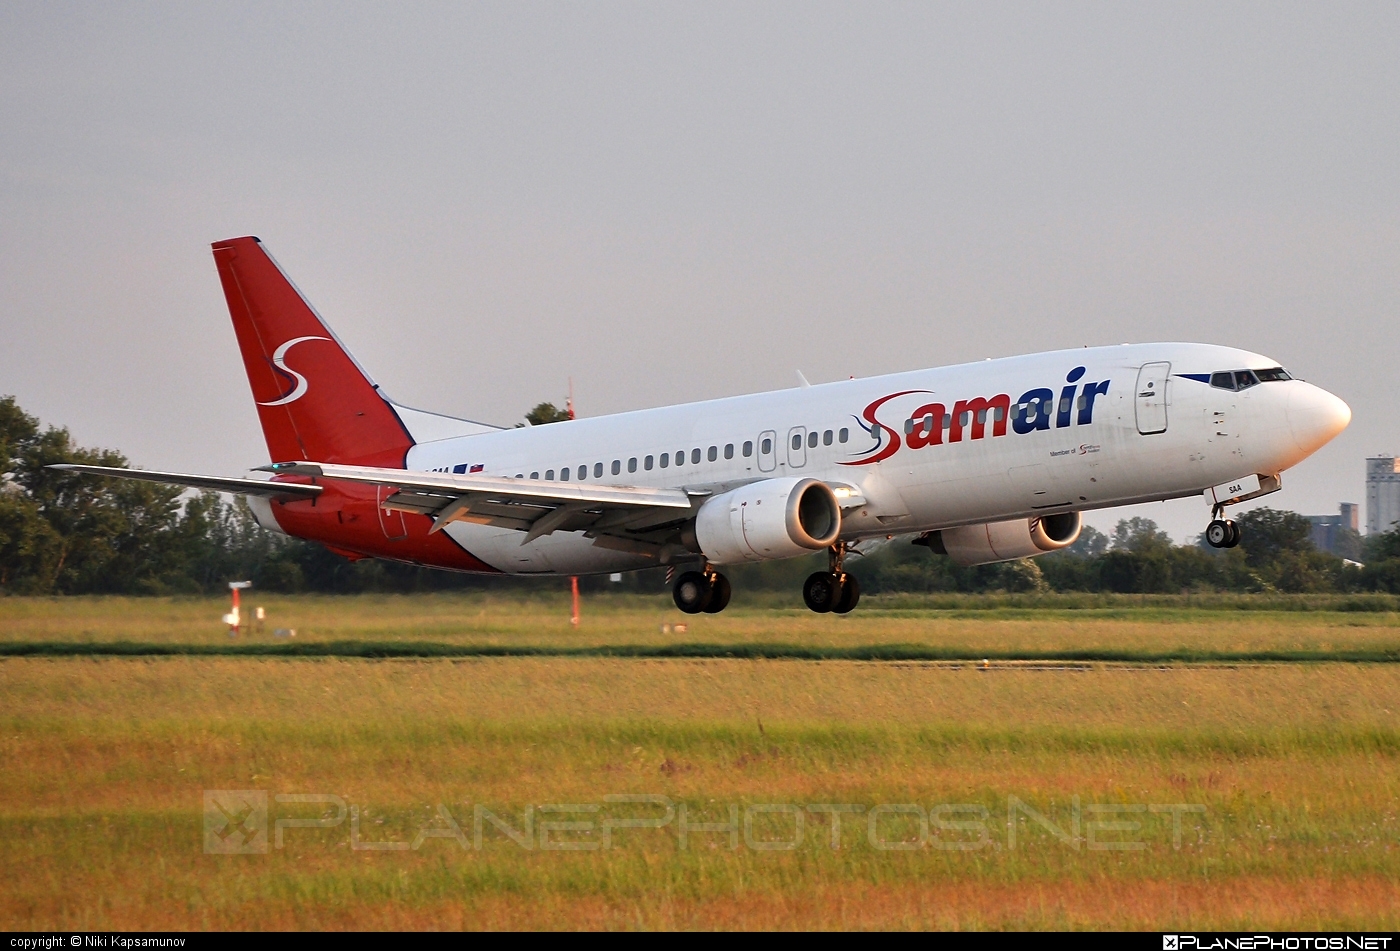 Boeing 737-400 - OM-SAA operated by Samair #b737 #boeing #boeing737